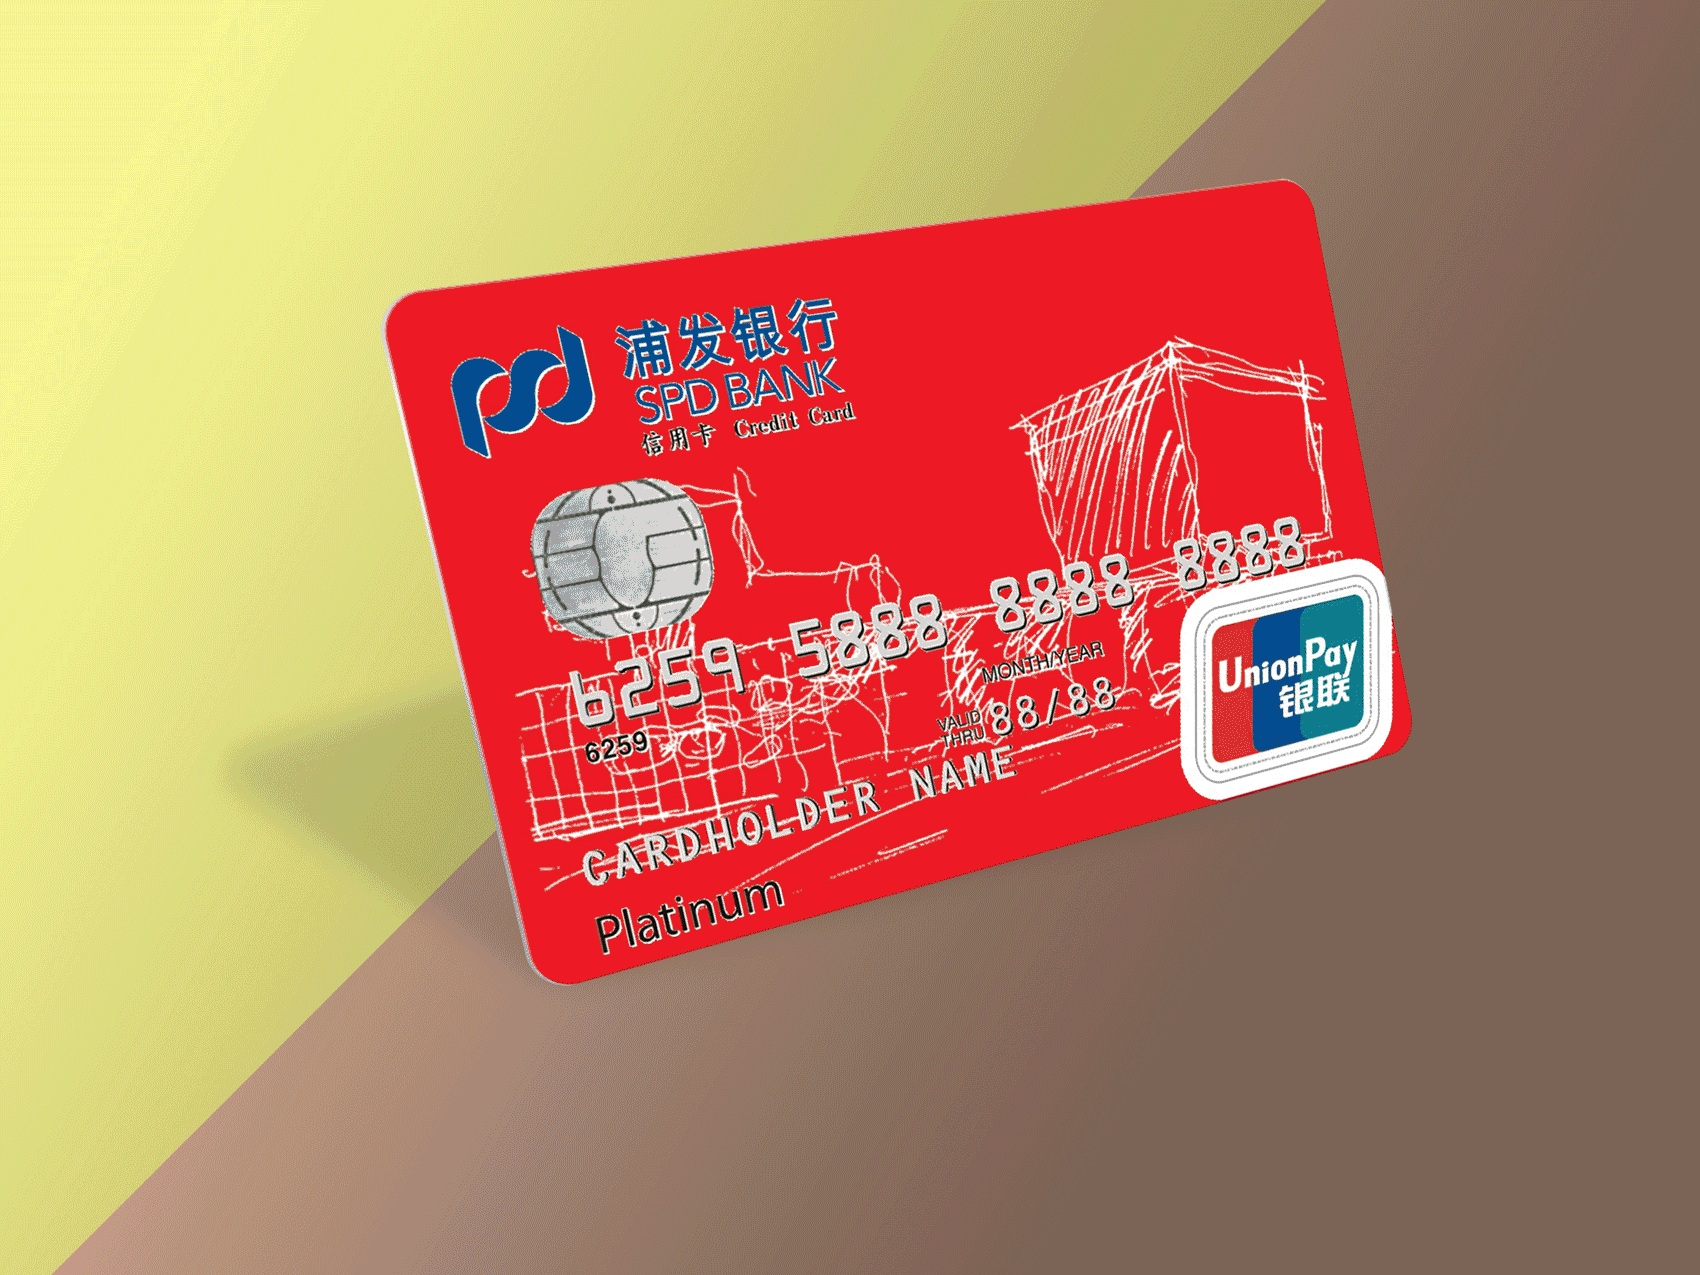 艺术×金融丨证大旗下上海喜玛拉雅美术馆携手浦发银行推出专属信用卡